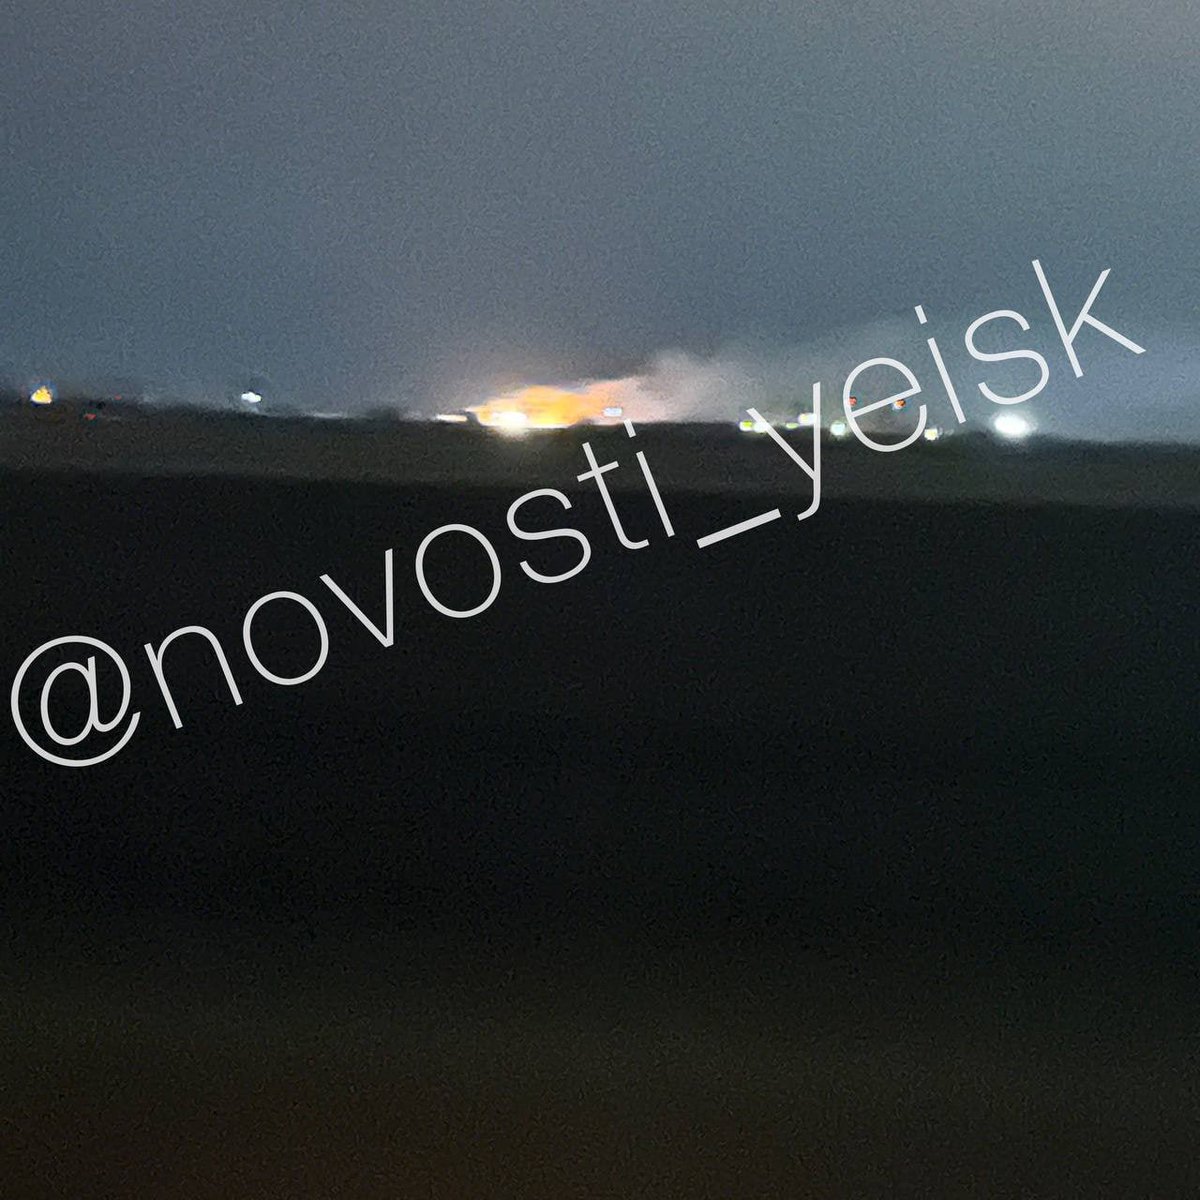 تم الإبلاغ عن حريق وانفجارات بالقرب من قاعدة جوية في ييسك ، كراسنودار كراي